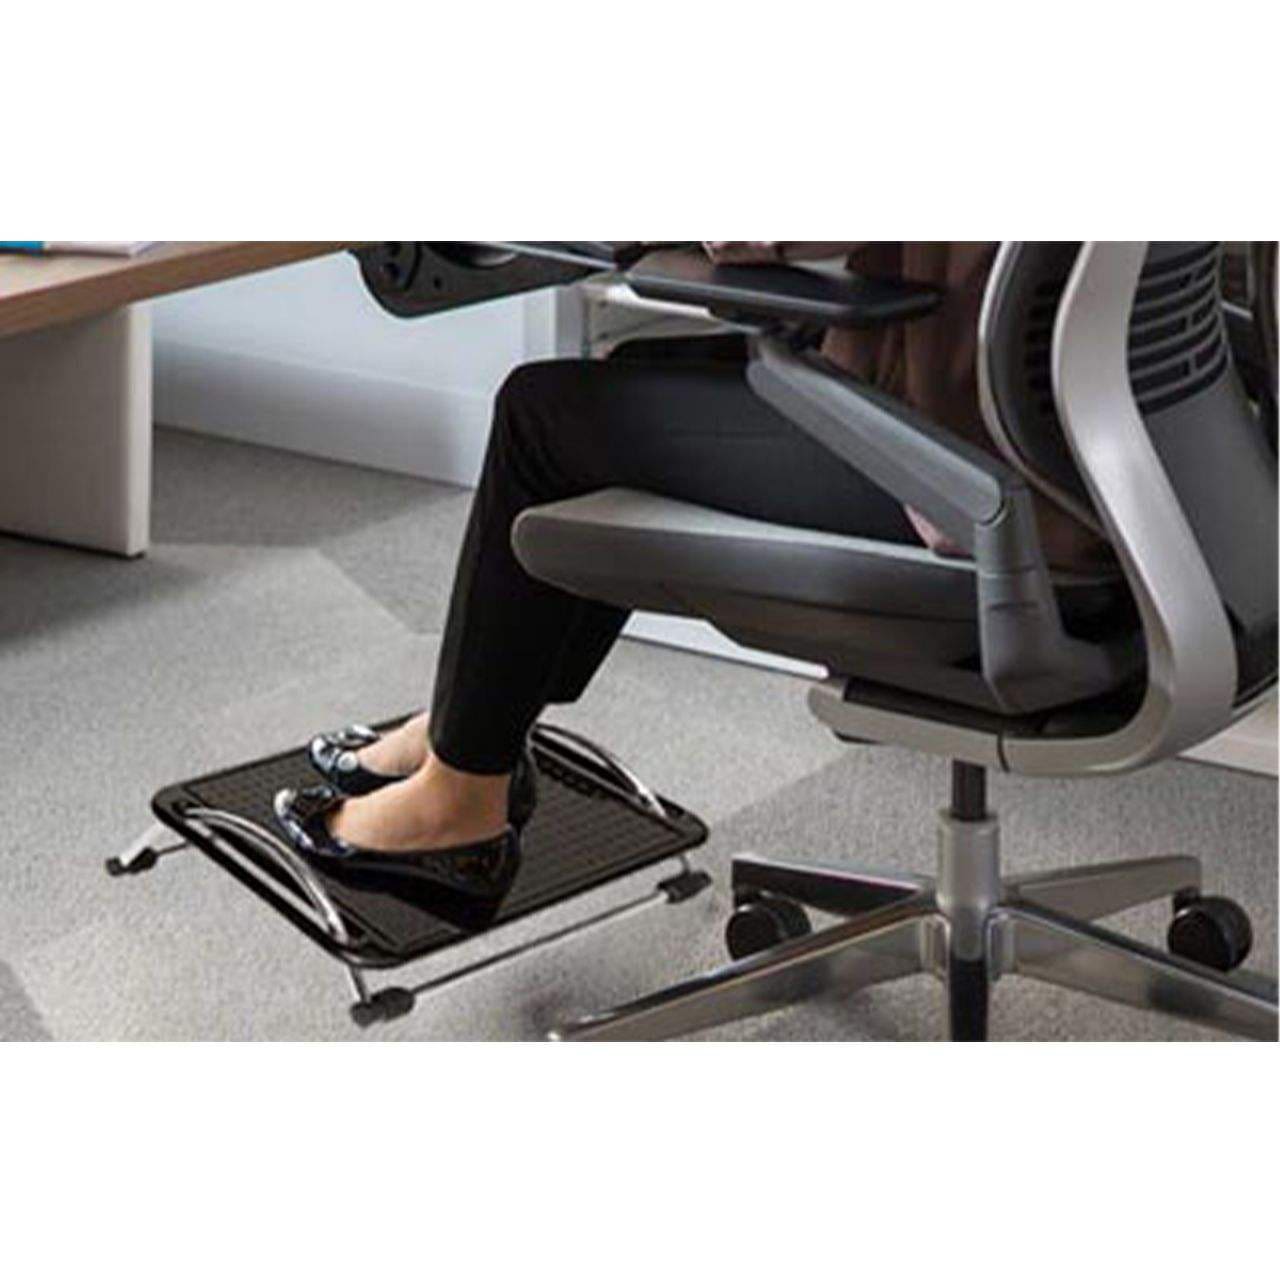 زیر پایی متحرک سنگین اداری نگین یکی از محصولاتی است که به نحوه صحیح نشستن کمک می کند است. این وسیله در شکل های گوناگون عرضه میشوند.